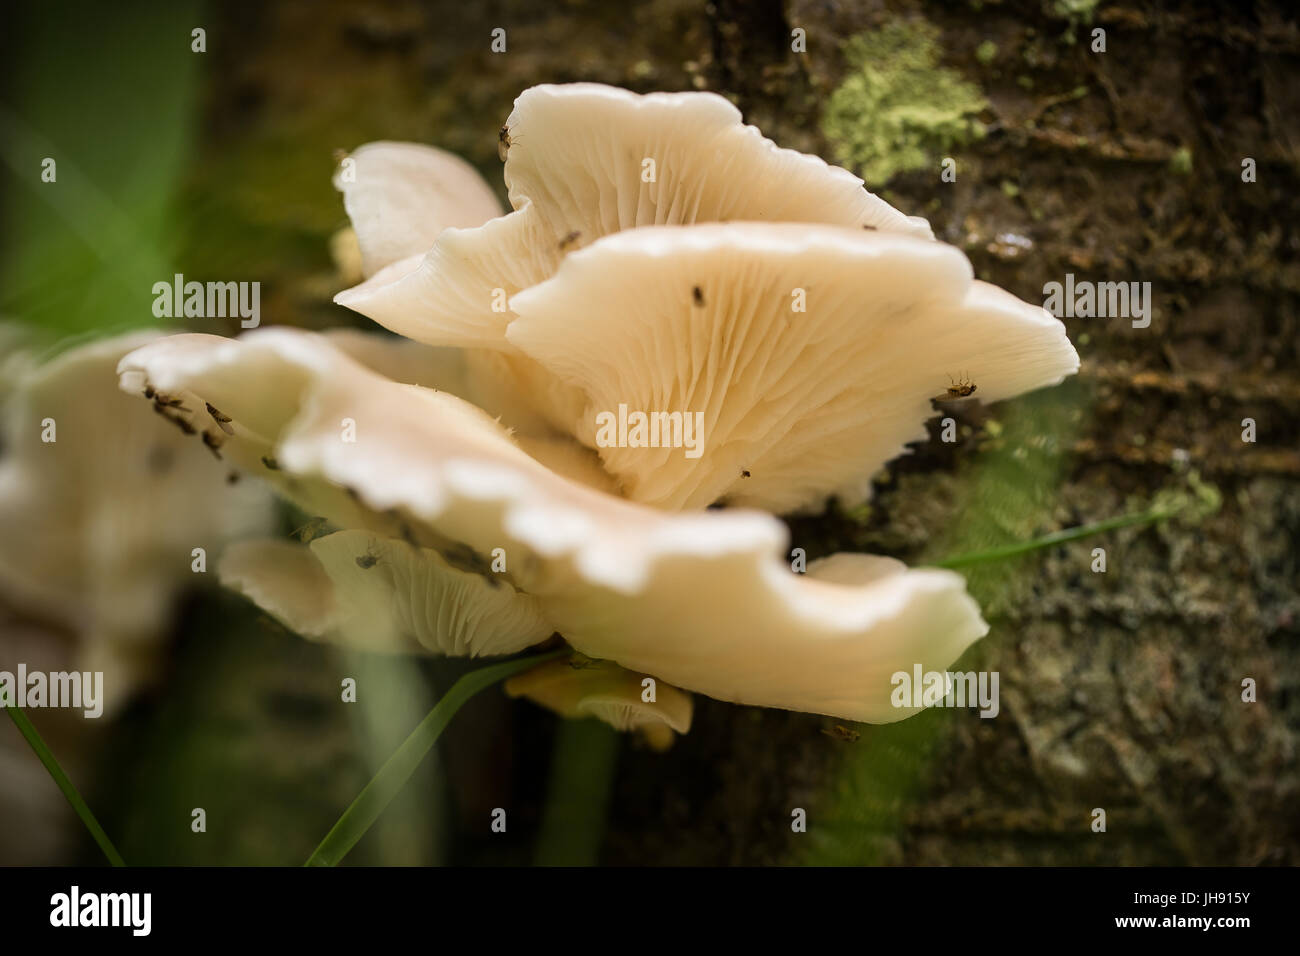 Bel bianco di funghi che crescono su una corteccia di albero in estate dopo la pioggia. Foto Stock